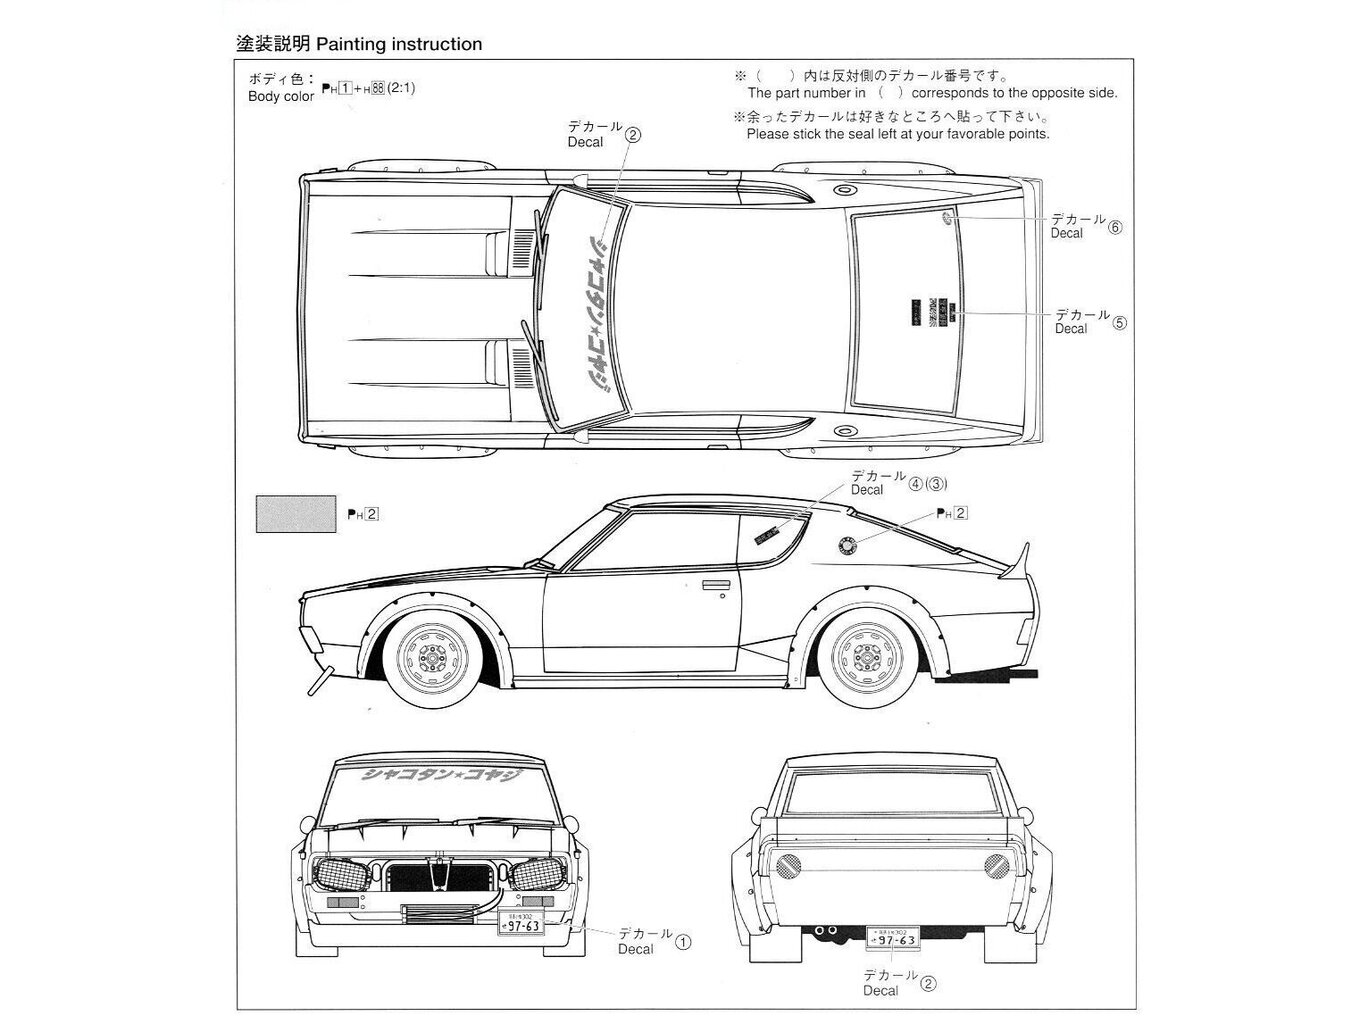 Aoshima - Kenmary Works LB Works Nissan Skyline C110 2Dr 2014 Ver., 1/24, 01147 hind ja info | Klotsid ja konstruktorid | kaup24.ee